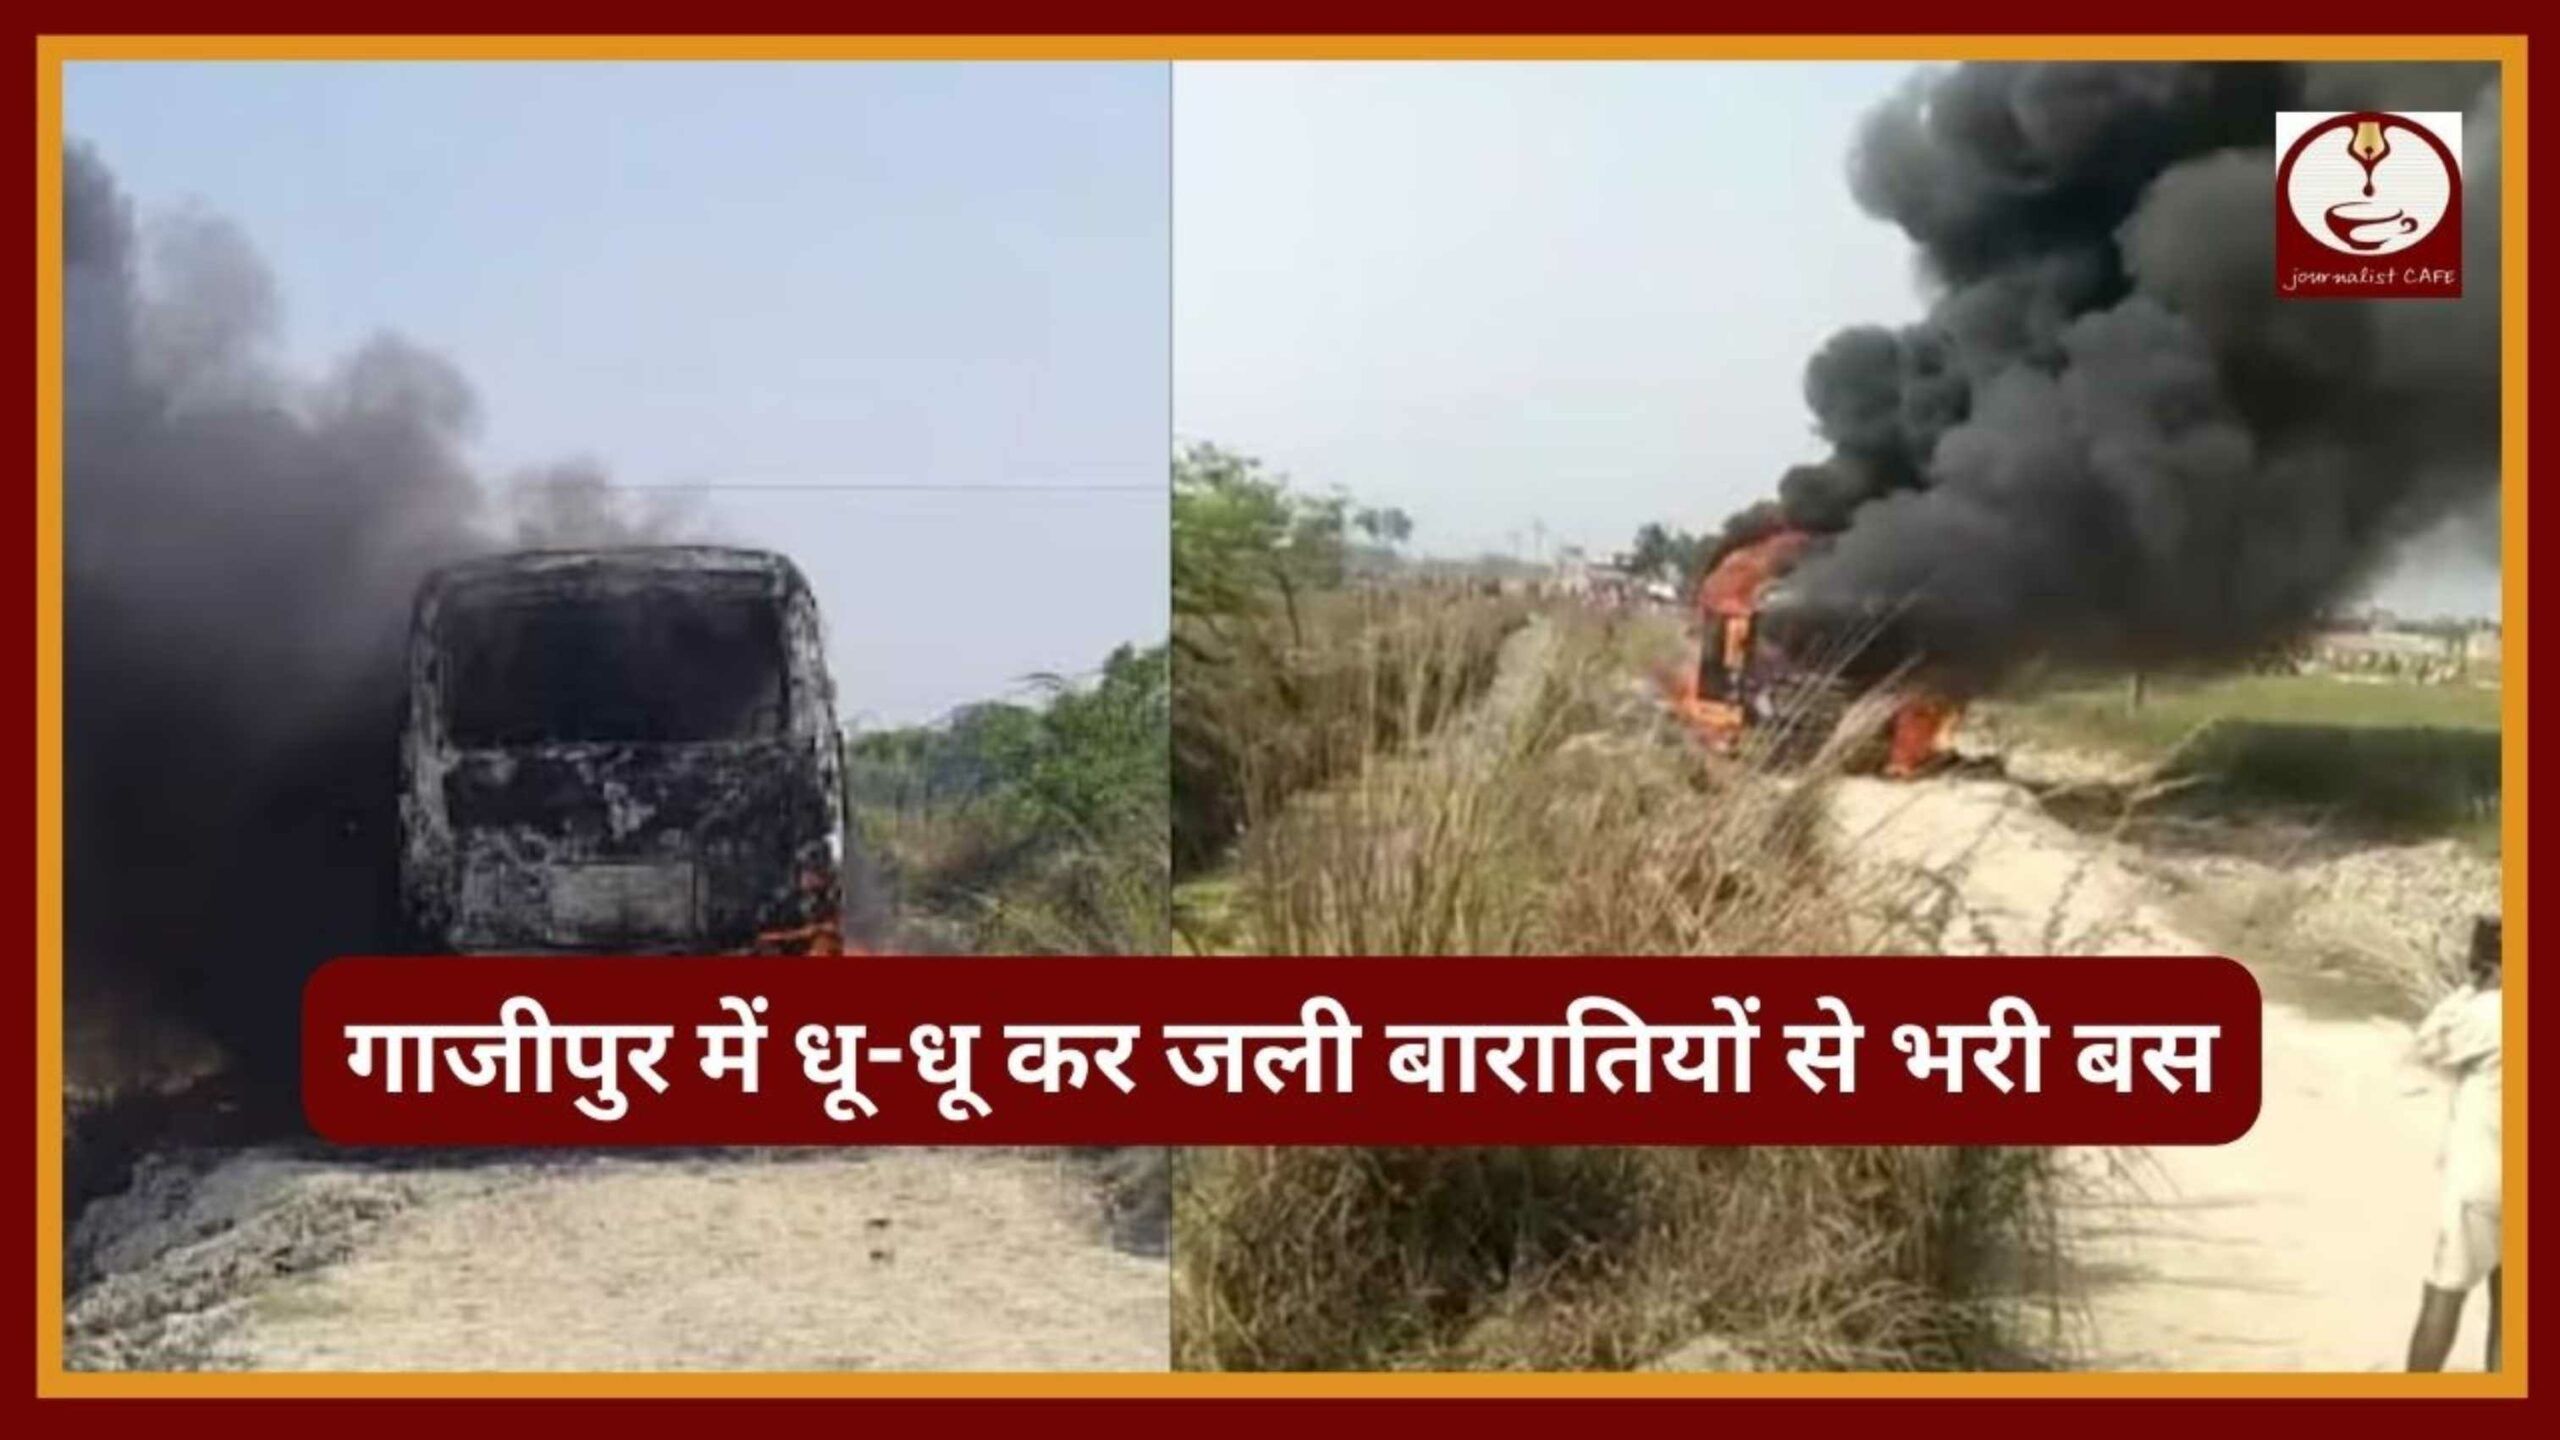 UP News: गाजीपुर में बड़ा हादसा, धू-धू कर जली बारातियों से भरी बस